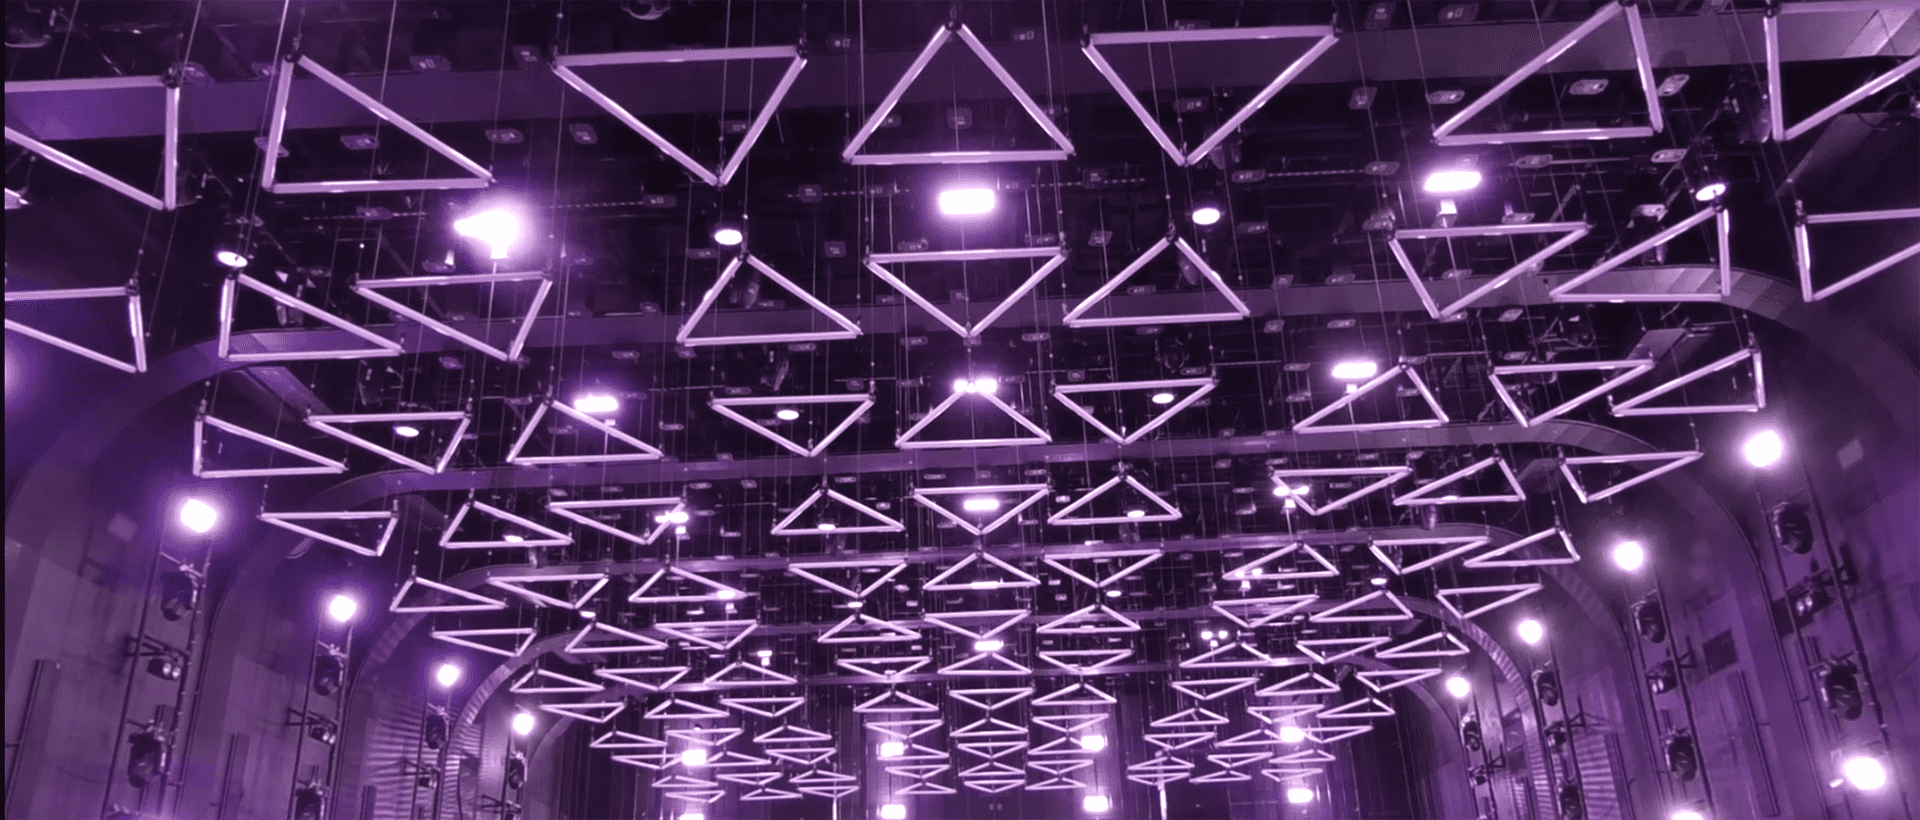 OG Club բեմի լույսերի և կինետիկ լուսավորության համակարգի ամբողջական ակումբային նախագծի լուծումով (4)